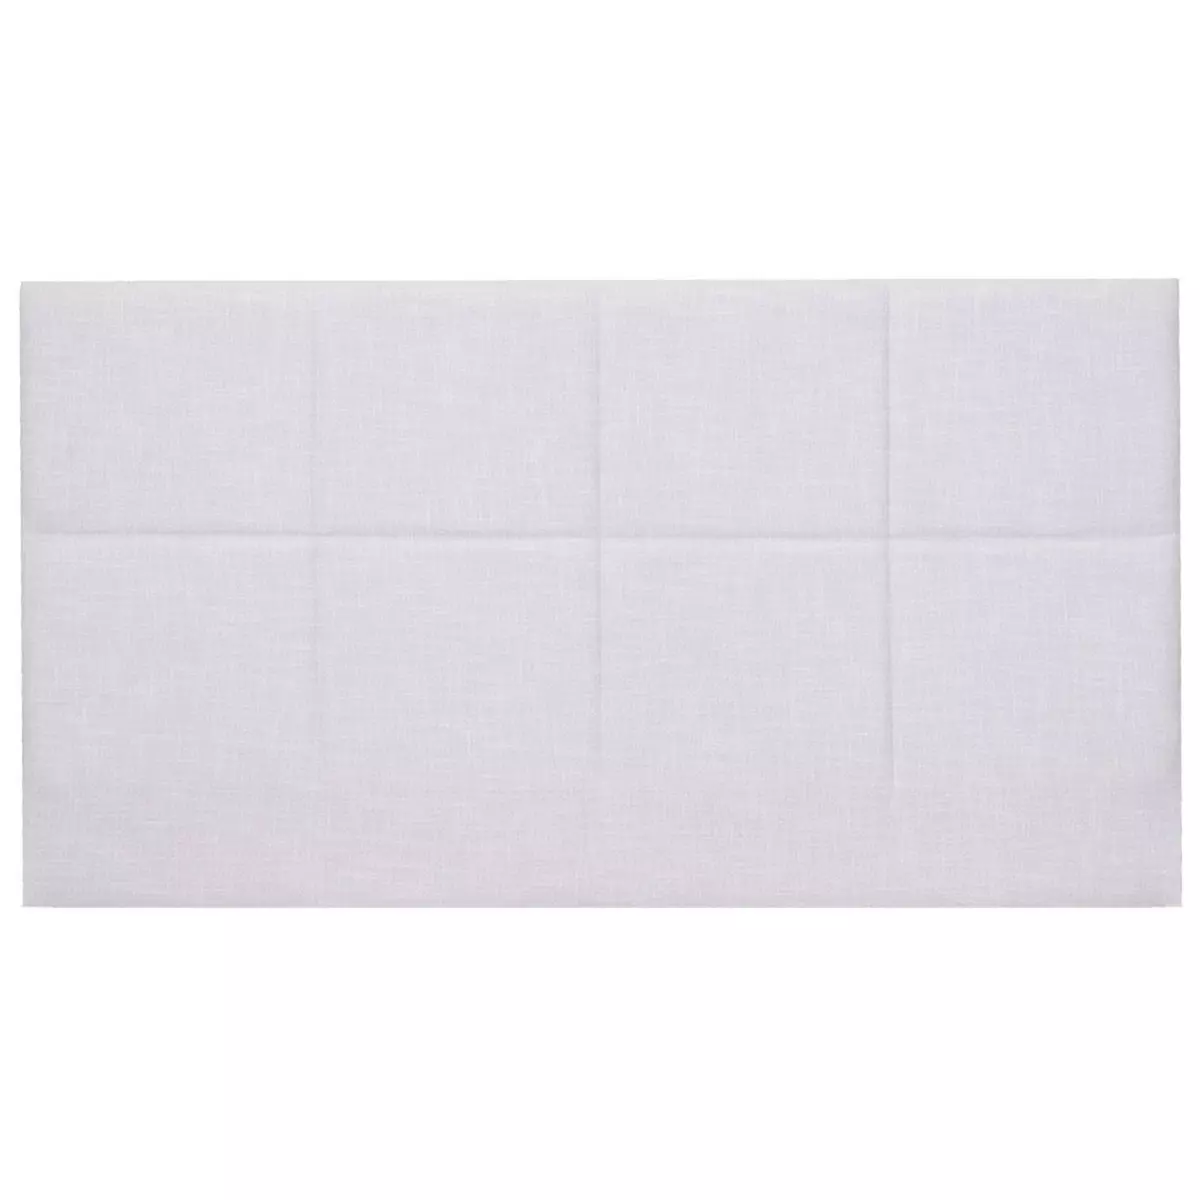 HOMIFAB Tête de lit capitonnée en tissu gris clair 160 cm - Emy